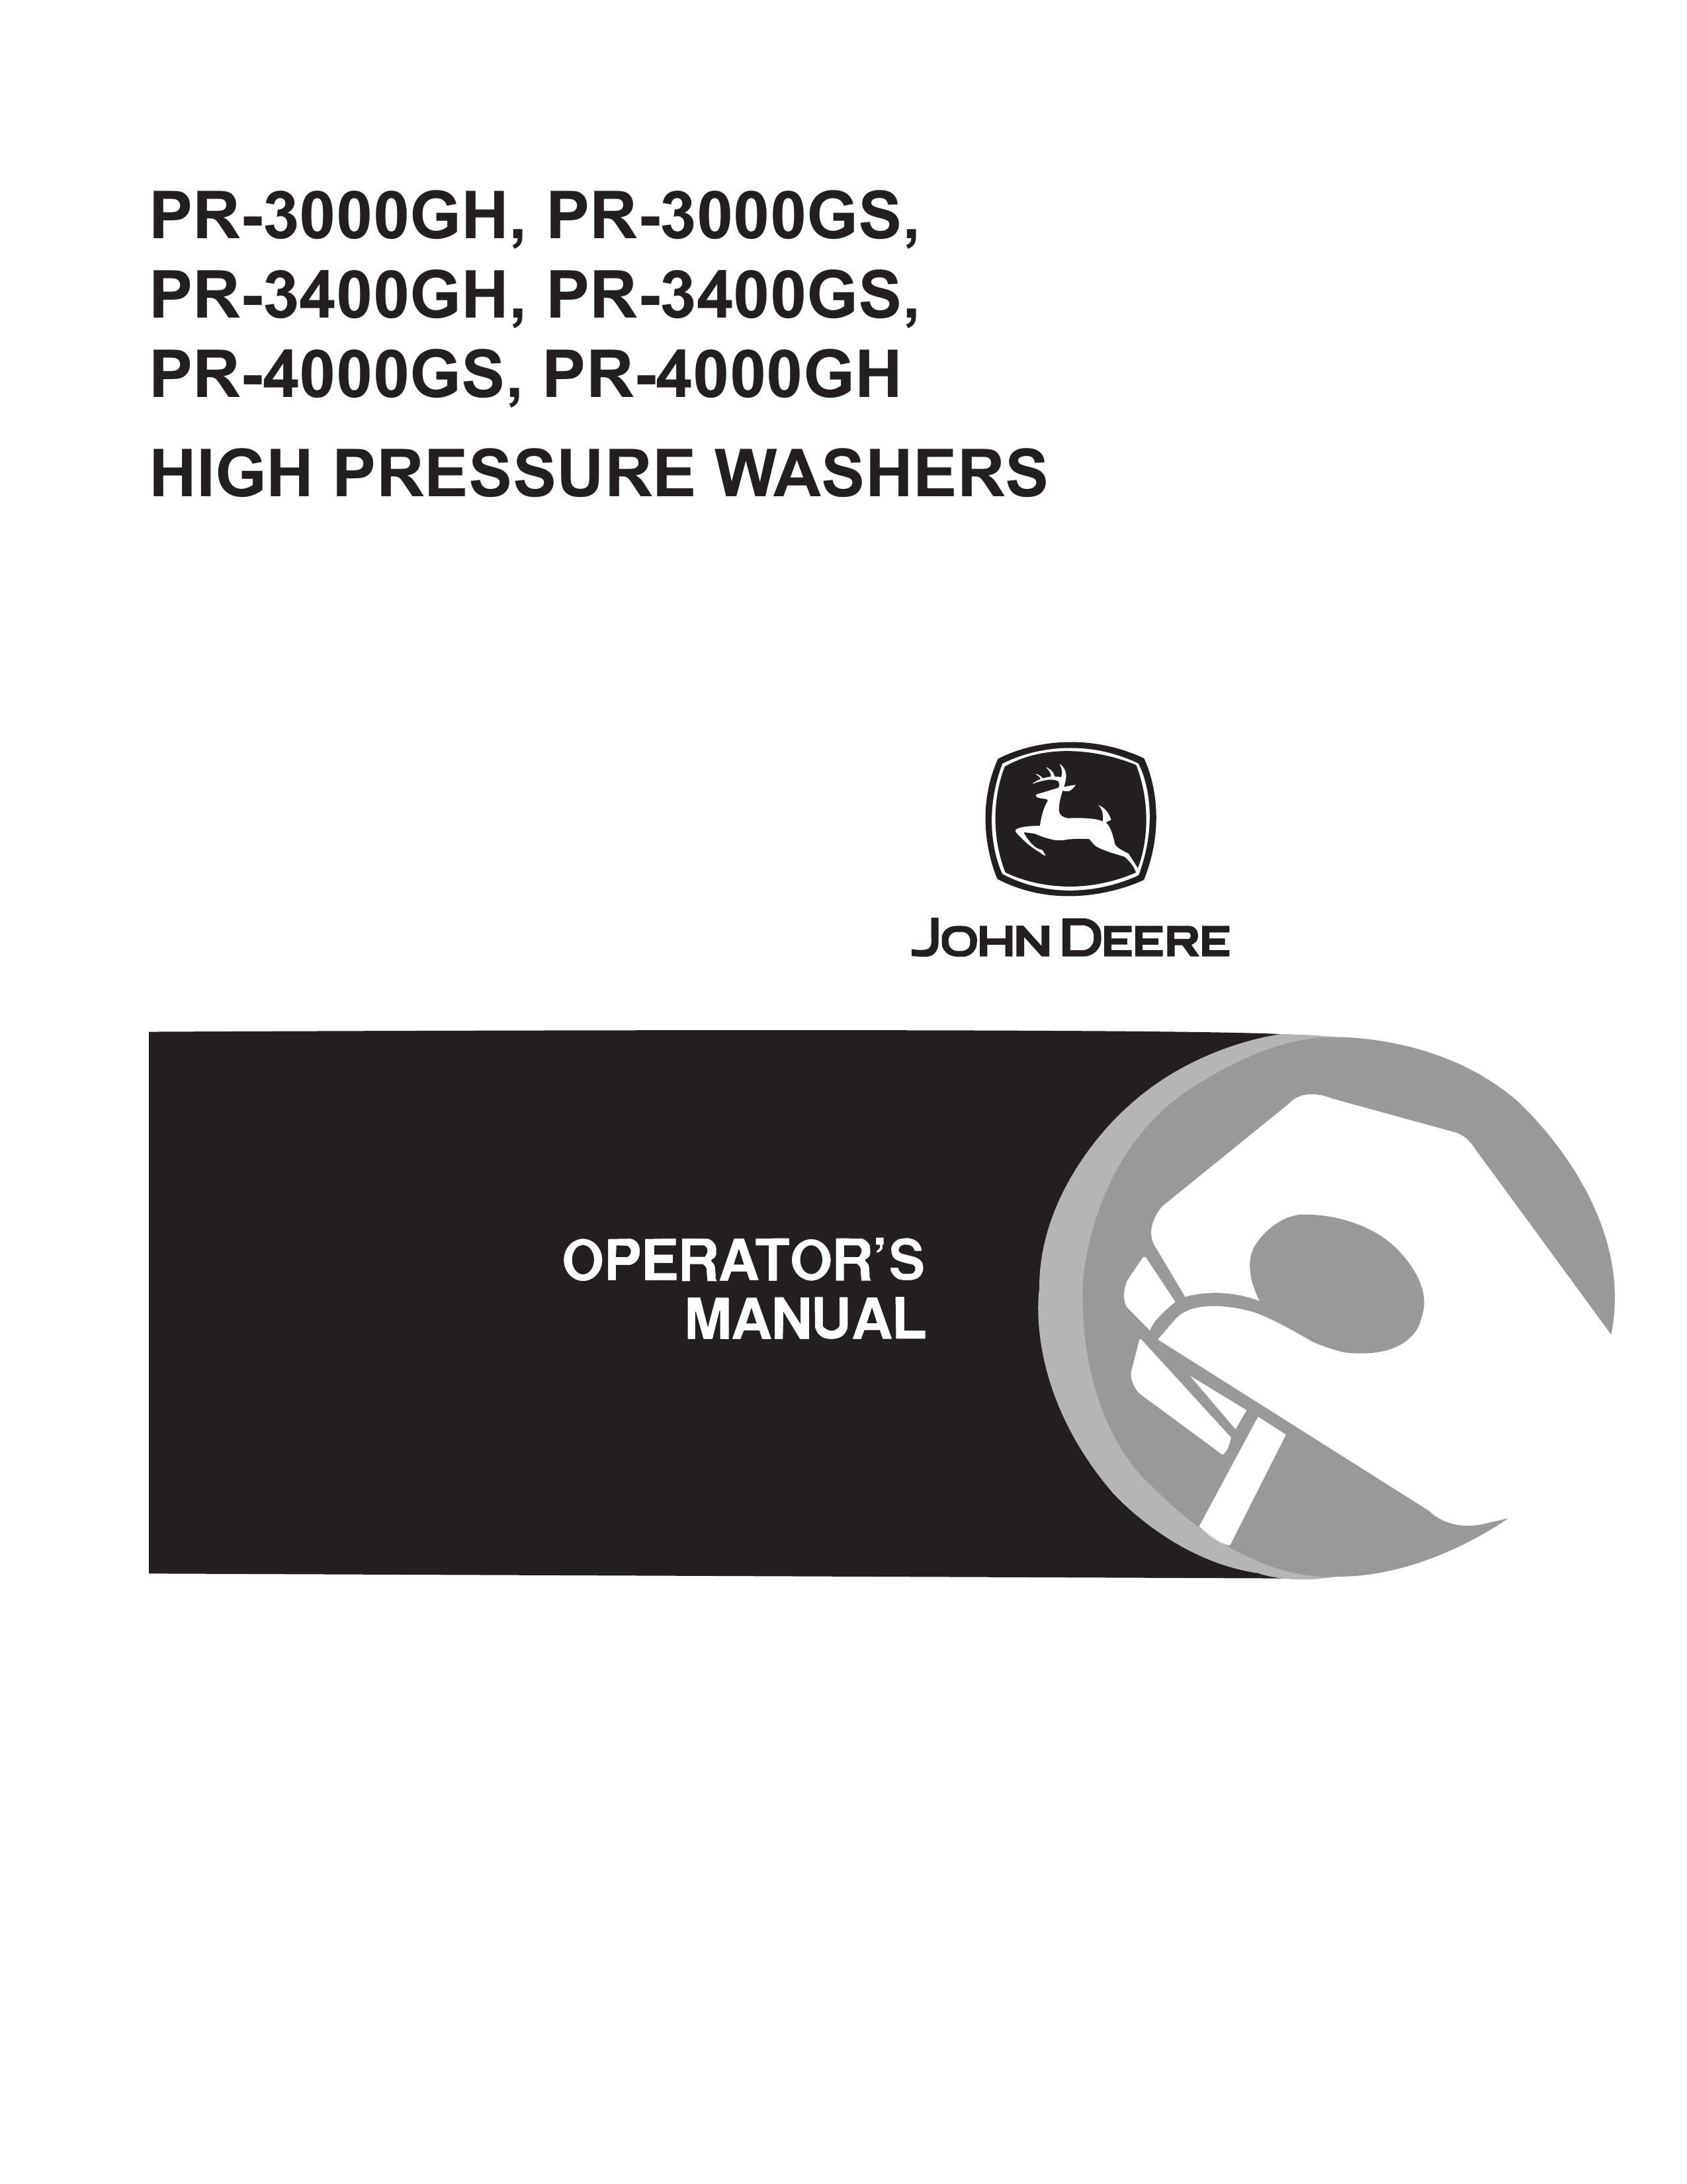 John Deere PR-3000GH Pressure Washer User Manual